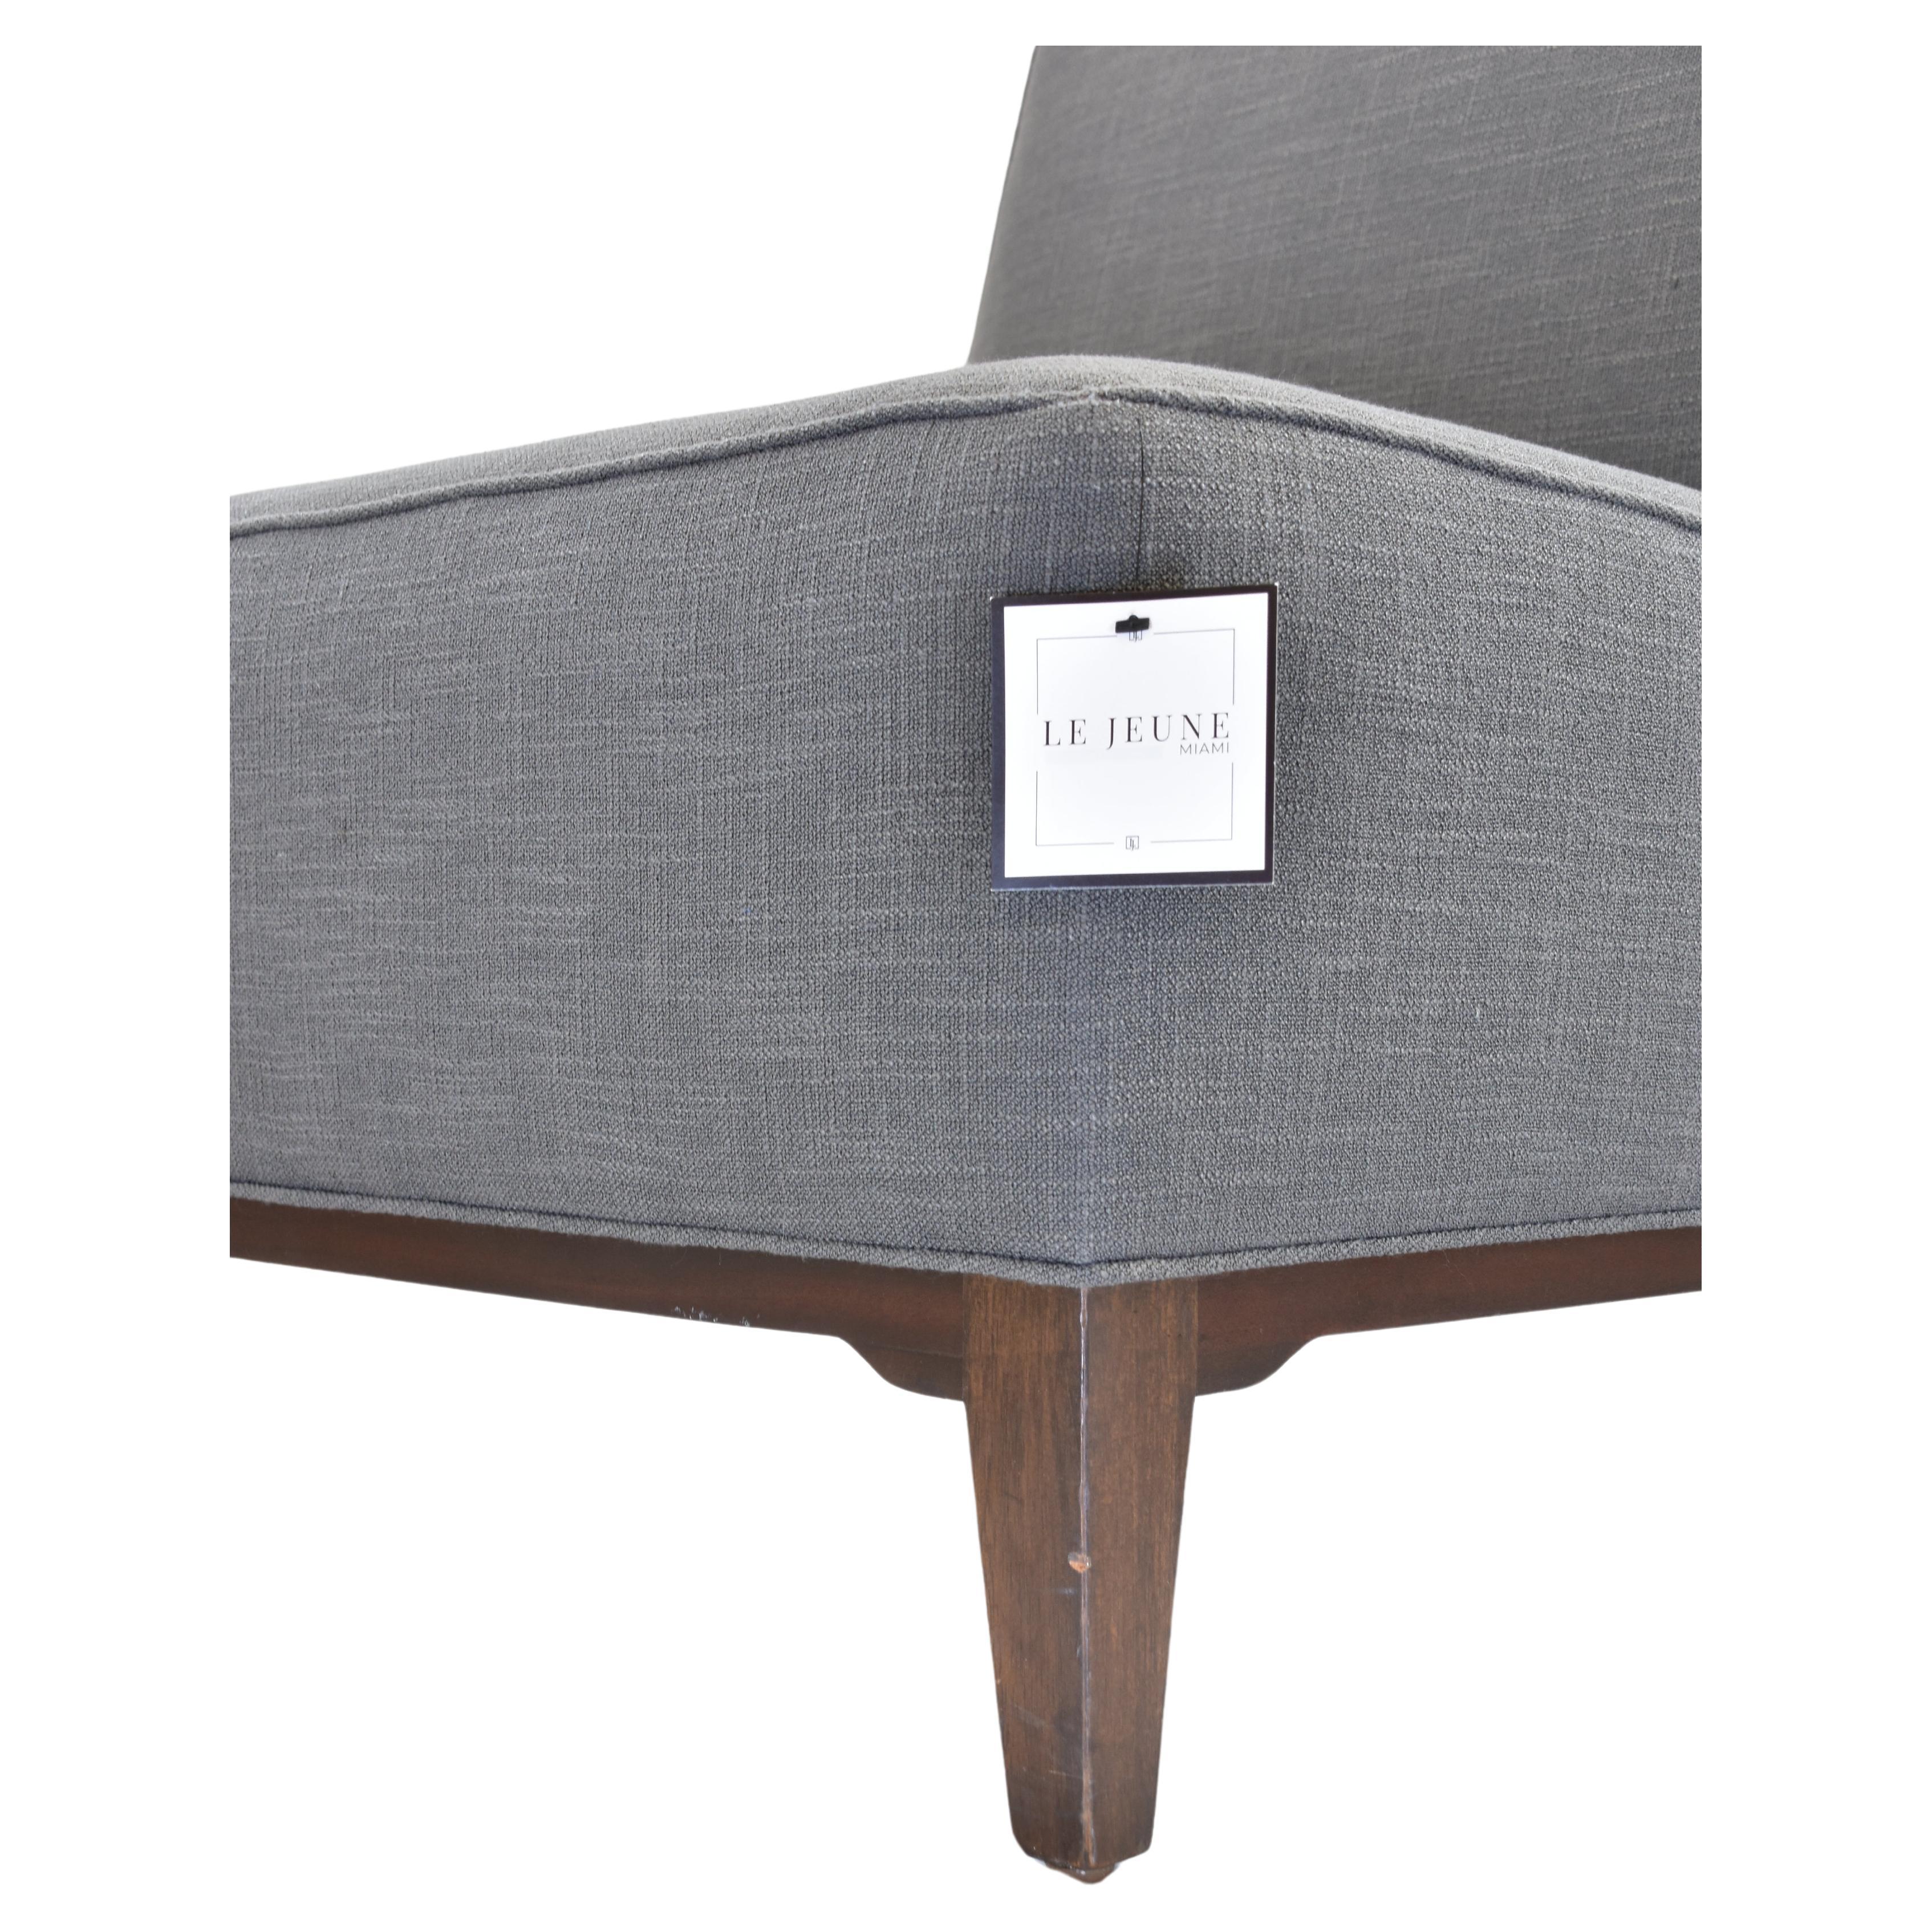 Le Jeune Upholstery Loft Slipper Chair Showroom Model For Sale 5